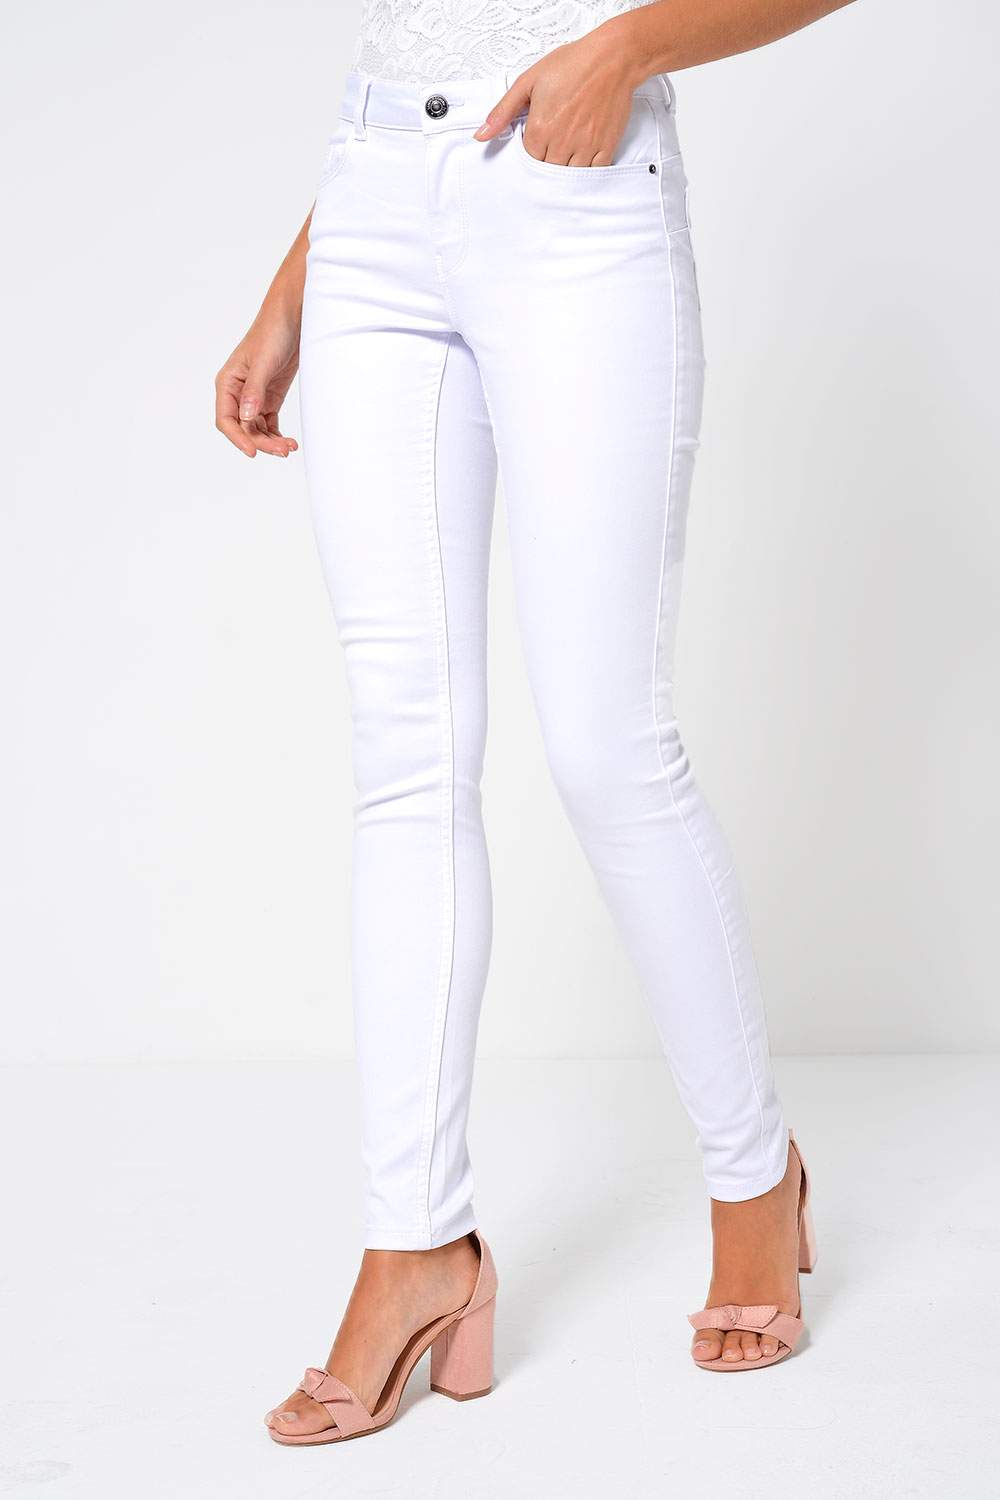 Moda Shape Up Jeans in White | iCLOTHING - iCLOTHING